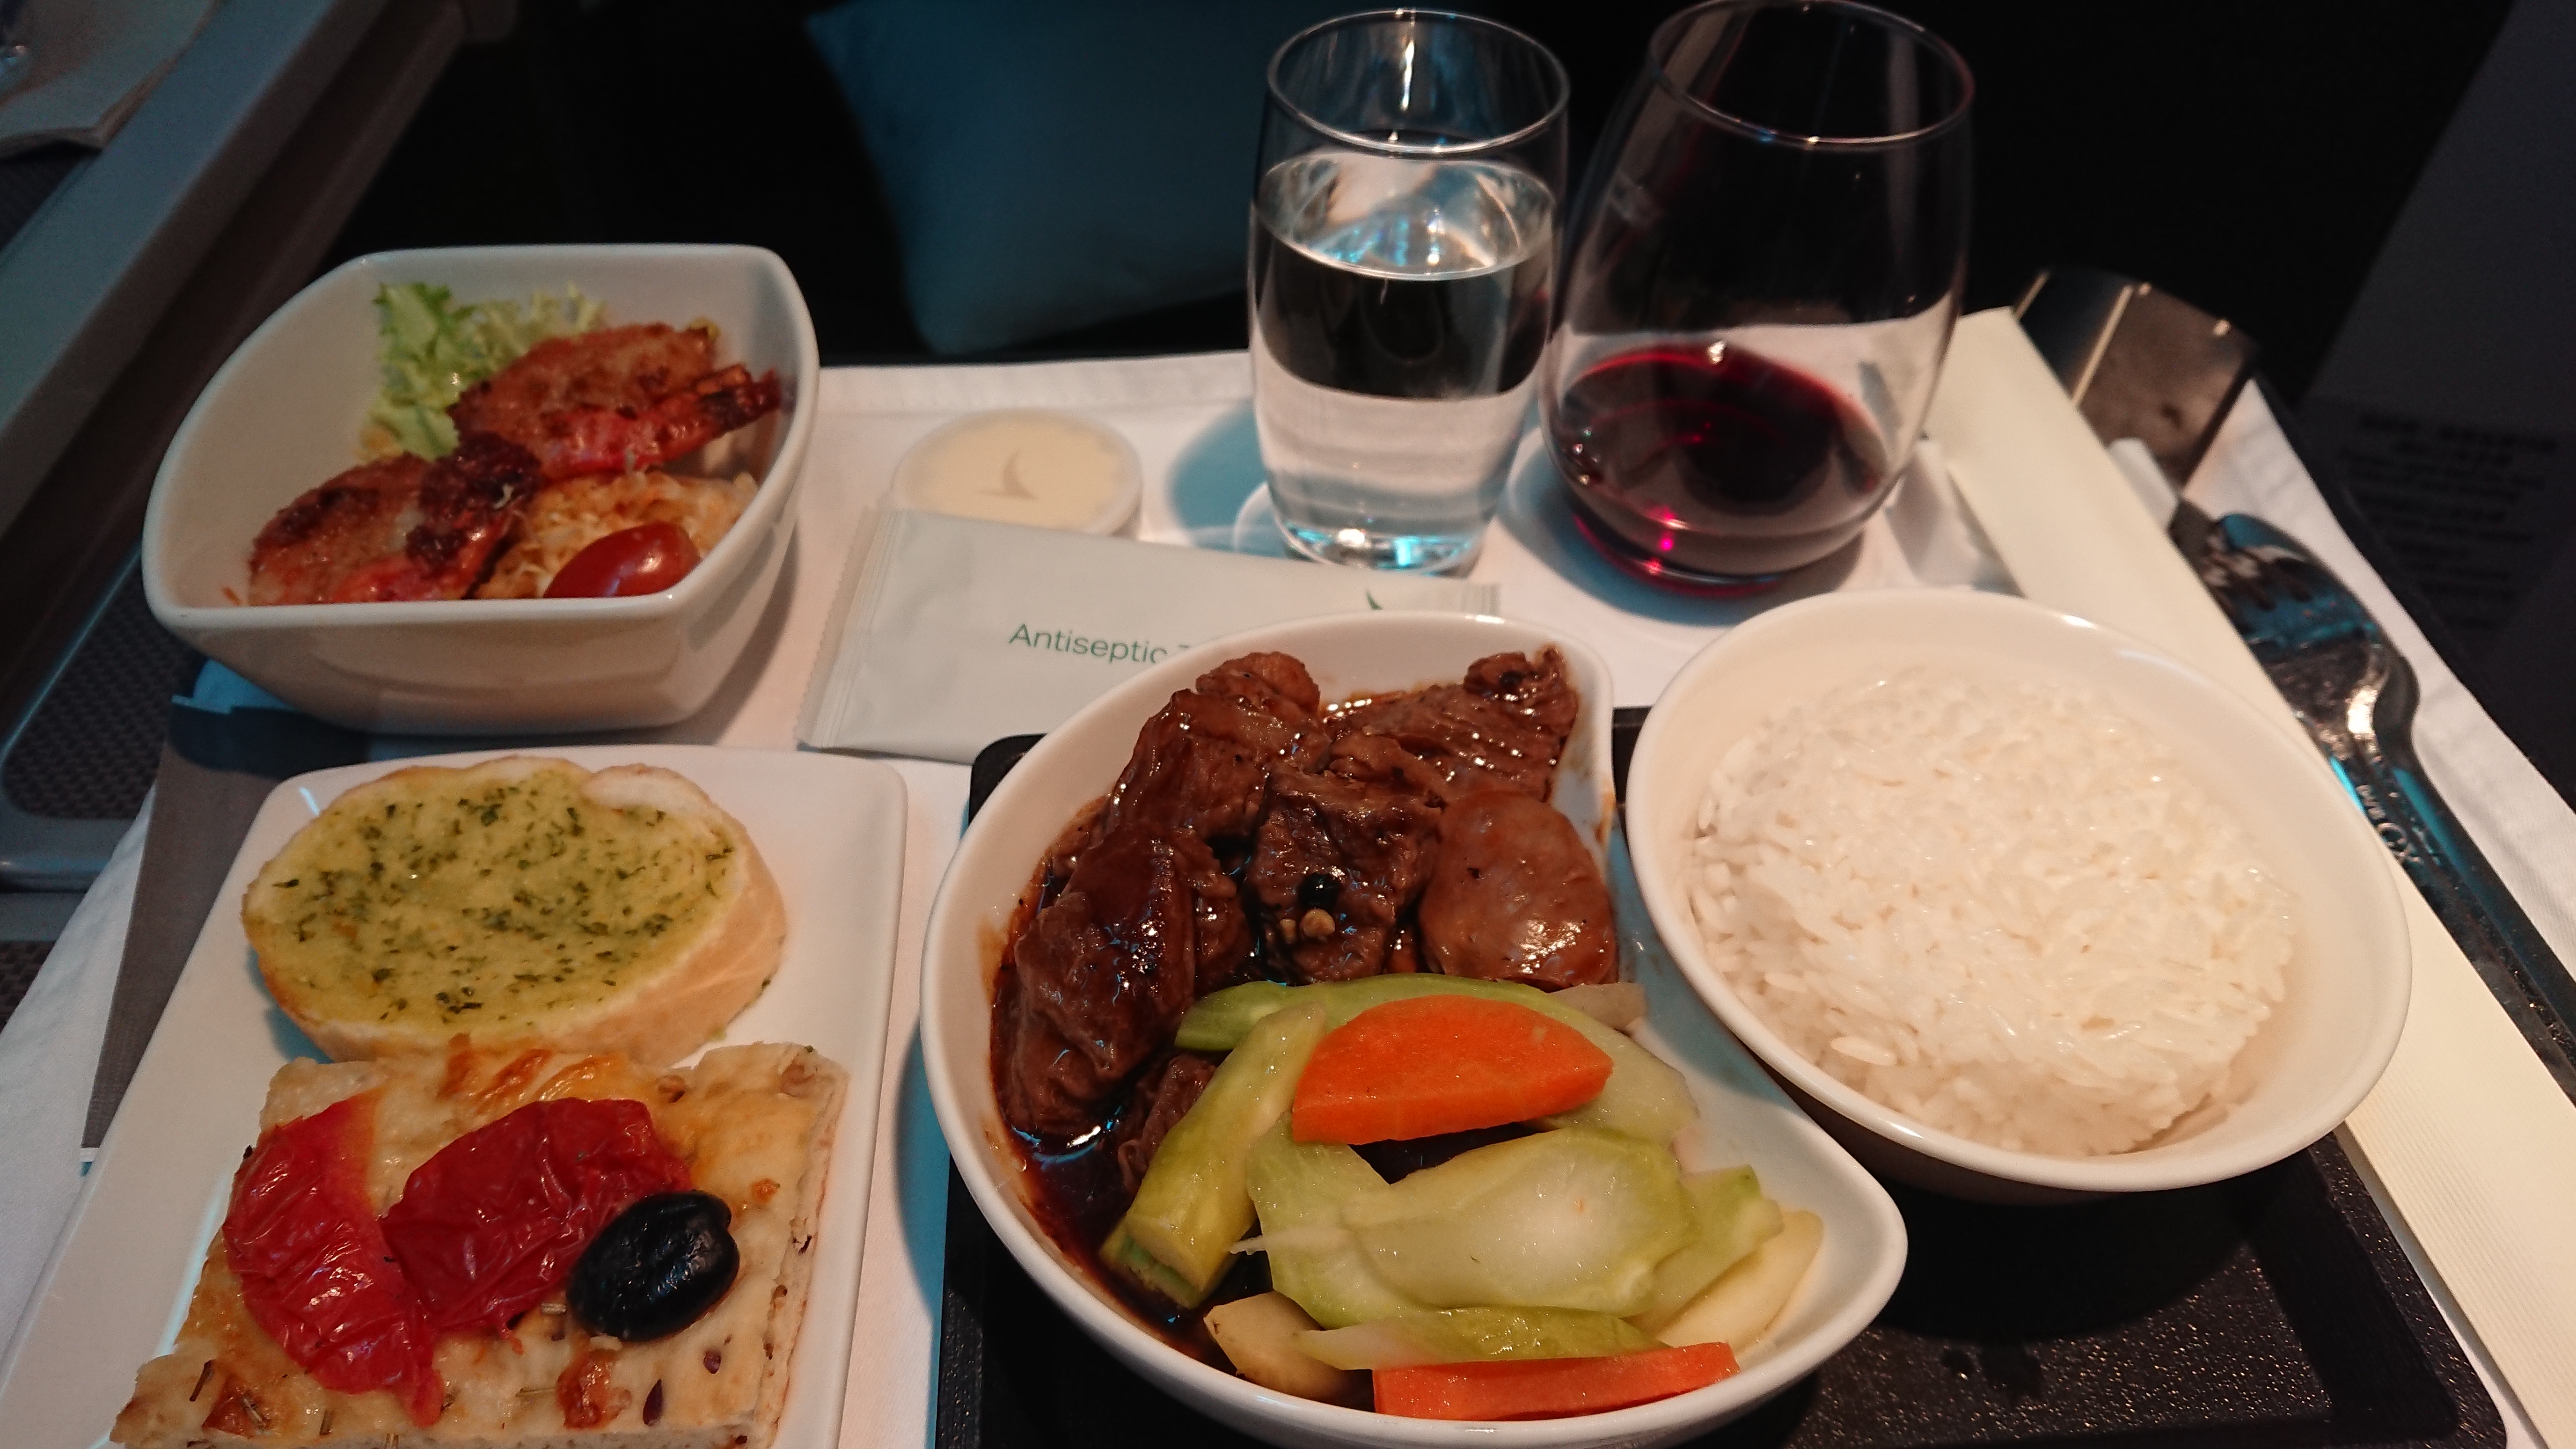 キャセイパシフィック Cx764 ホーチミン 香港 ビジネスクラス機内食 21nov18 飛行機とjalマイルとビジネスクラスの旅ブログ